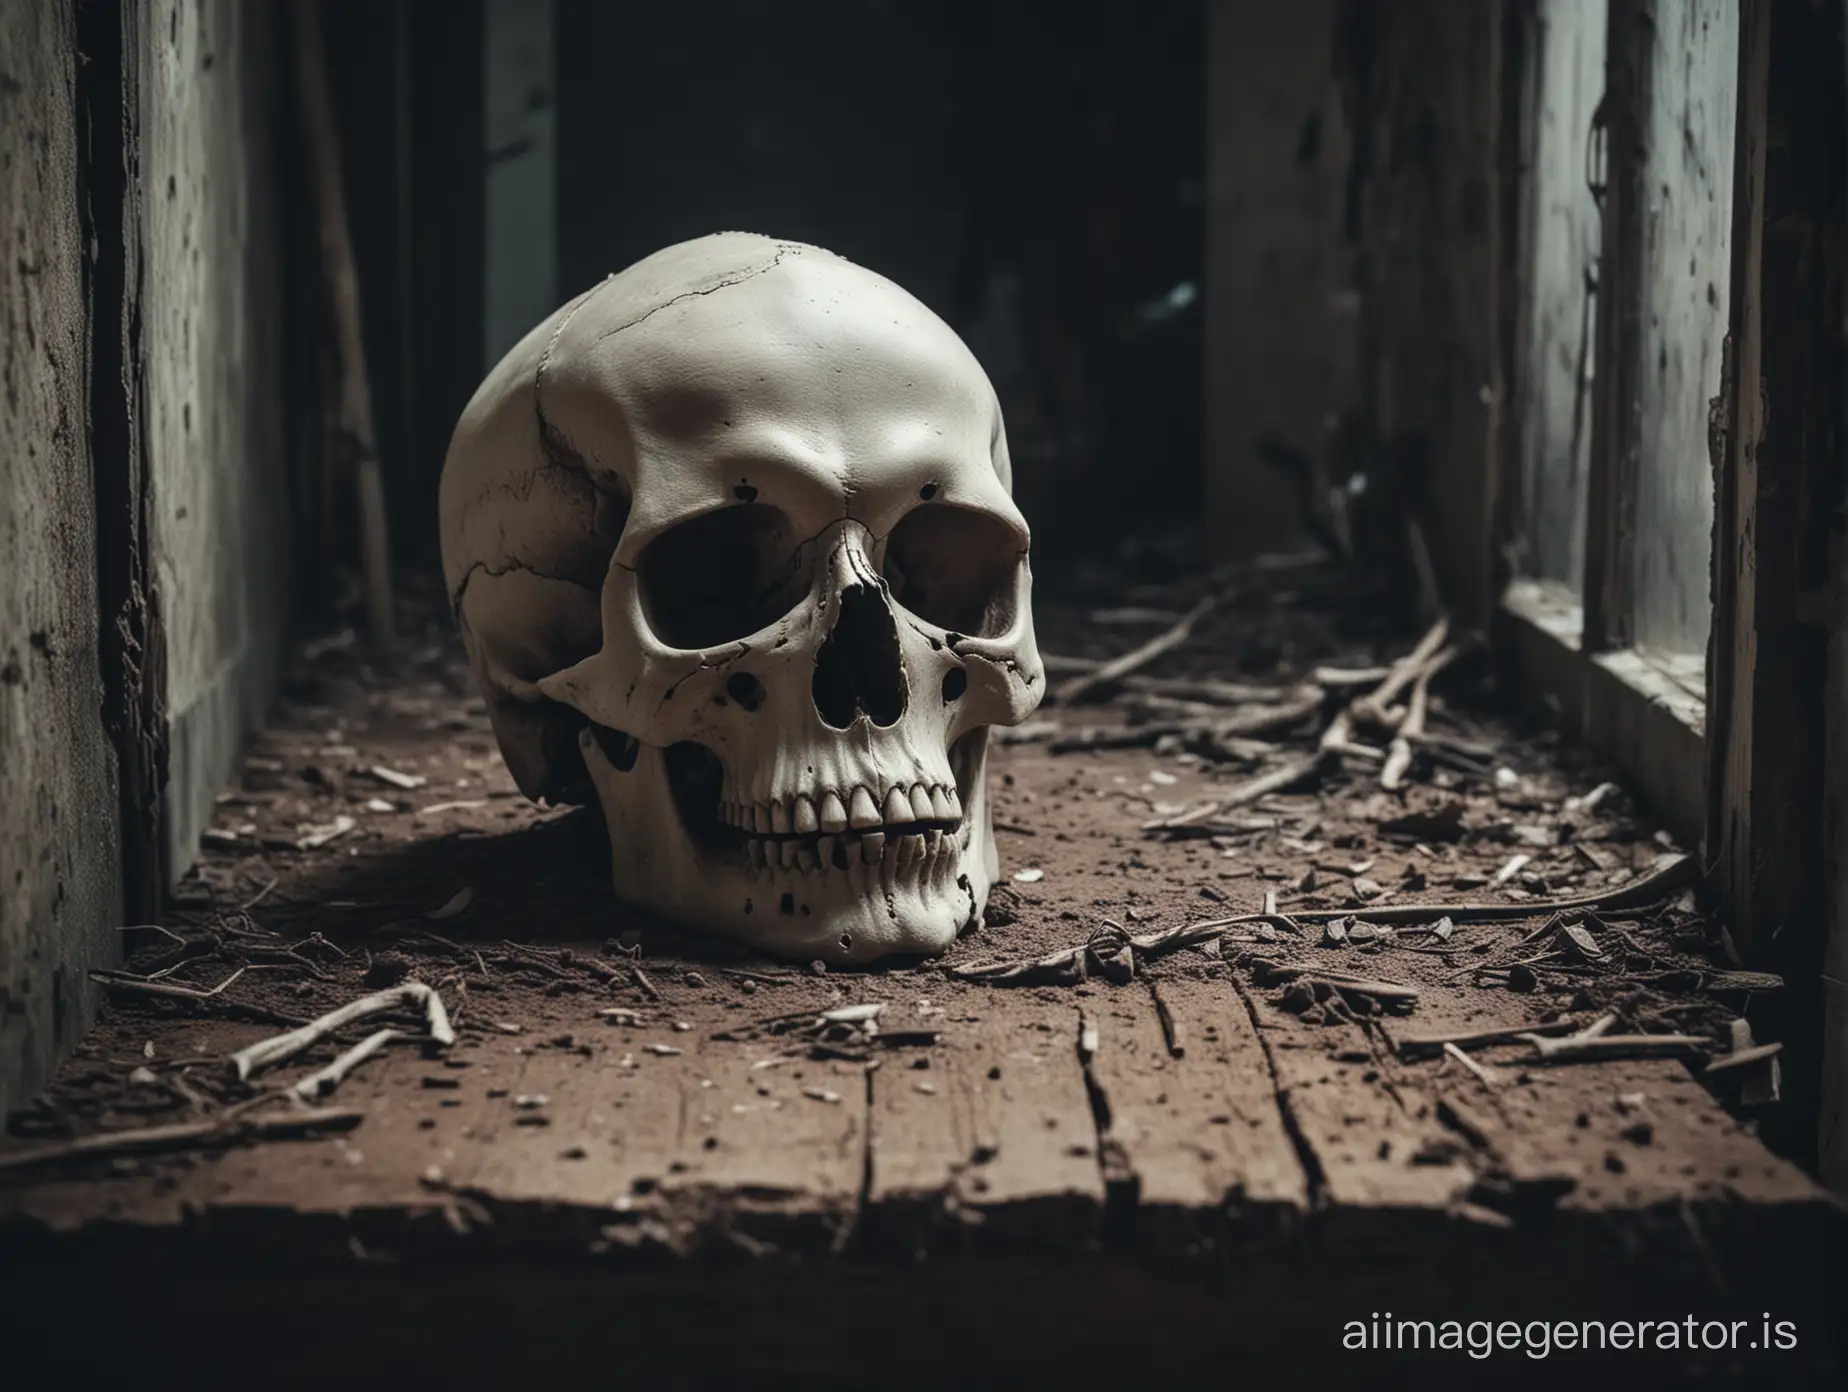 Eerie-Skull-in-Haunting-Setting-Atmospheric-Artistic-Rendering-of-a-Spooky-Scene